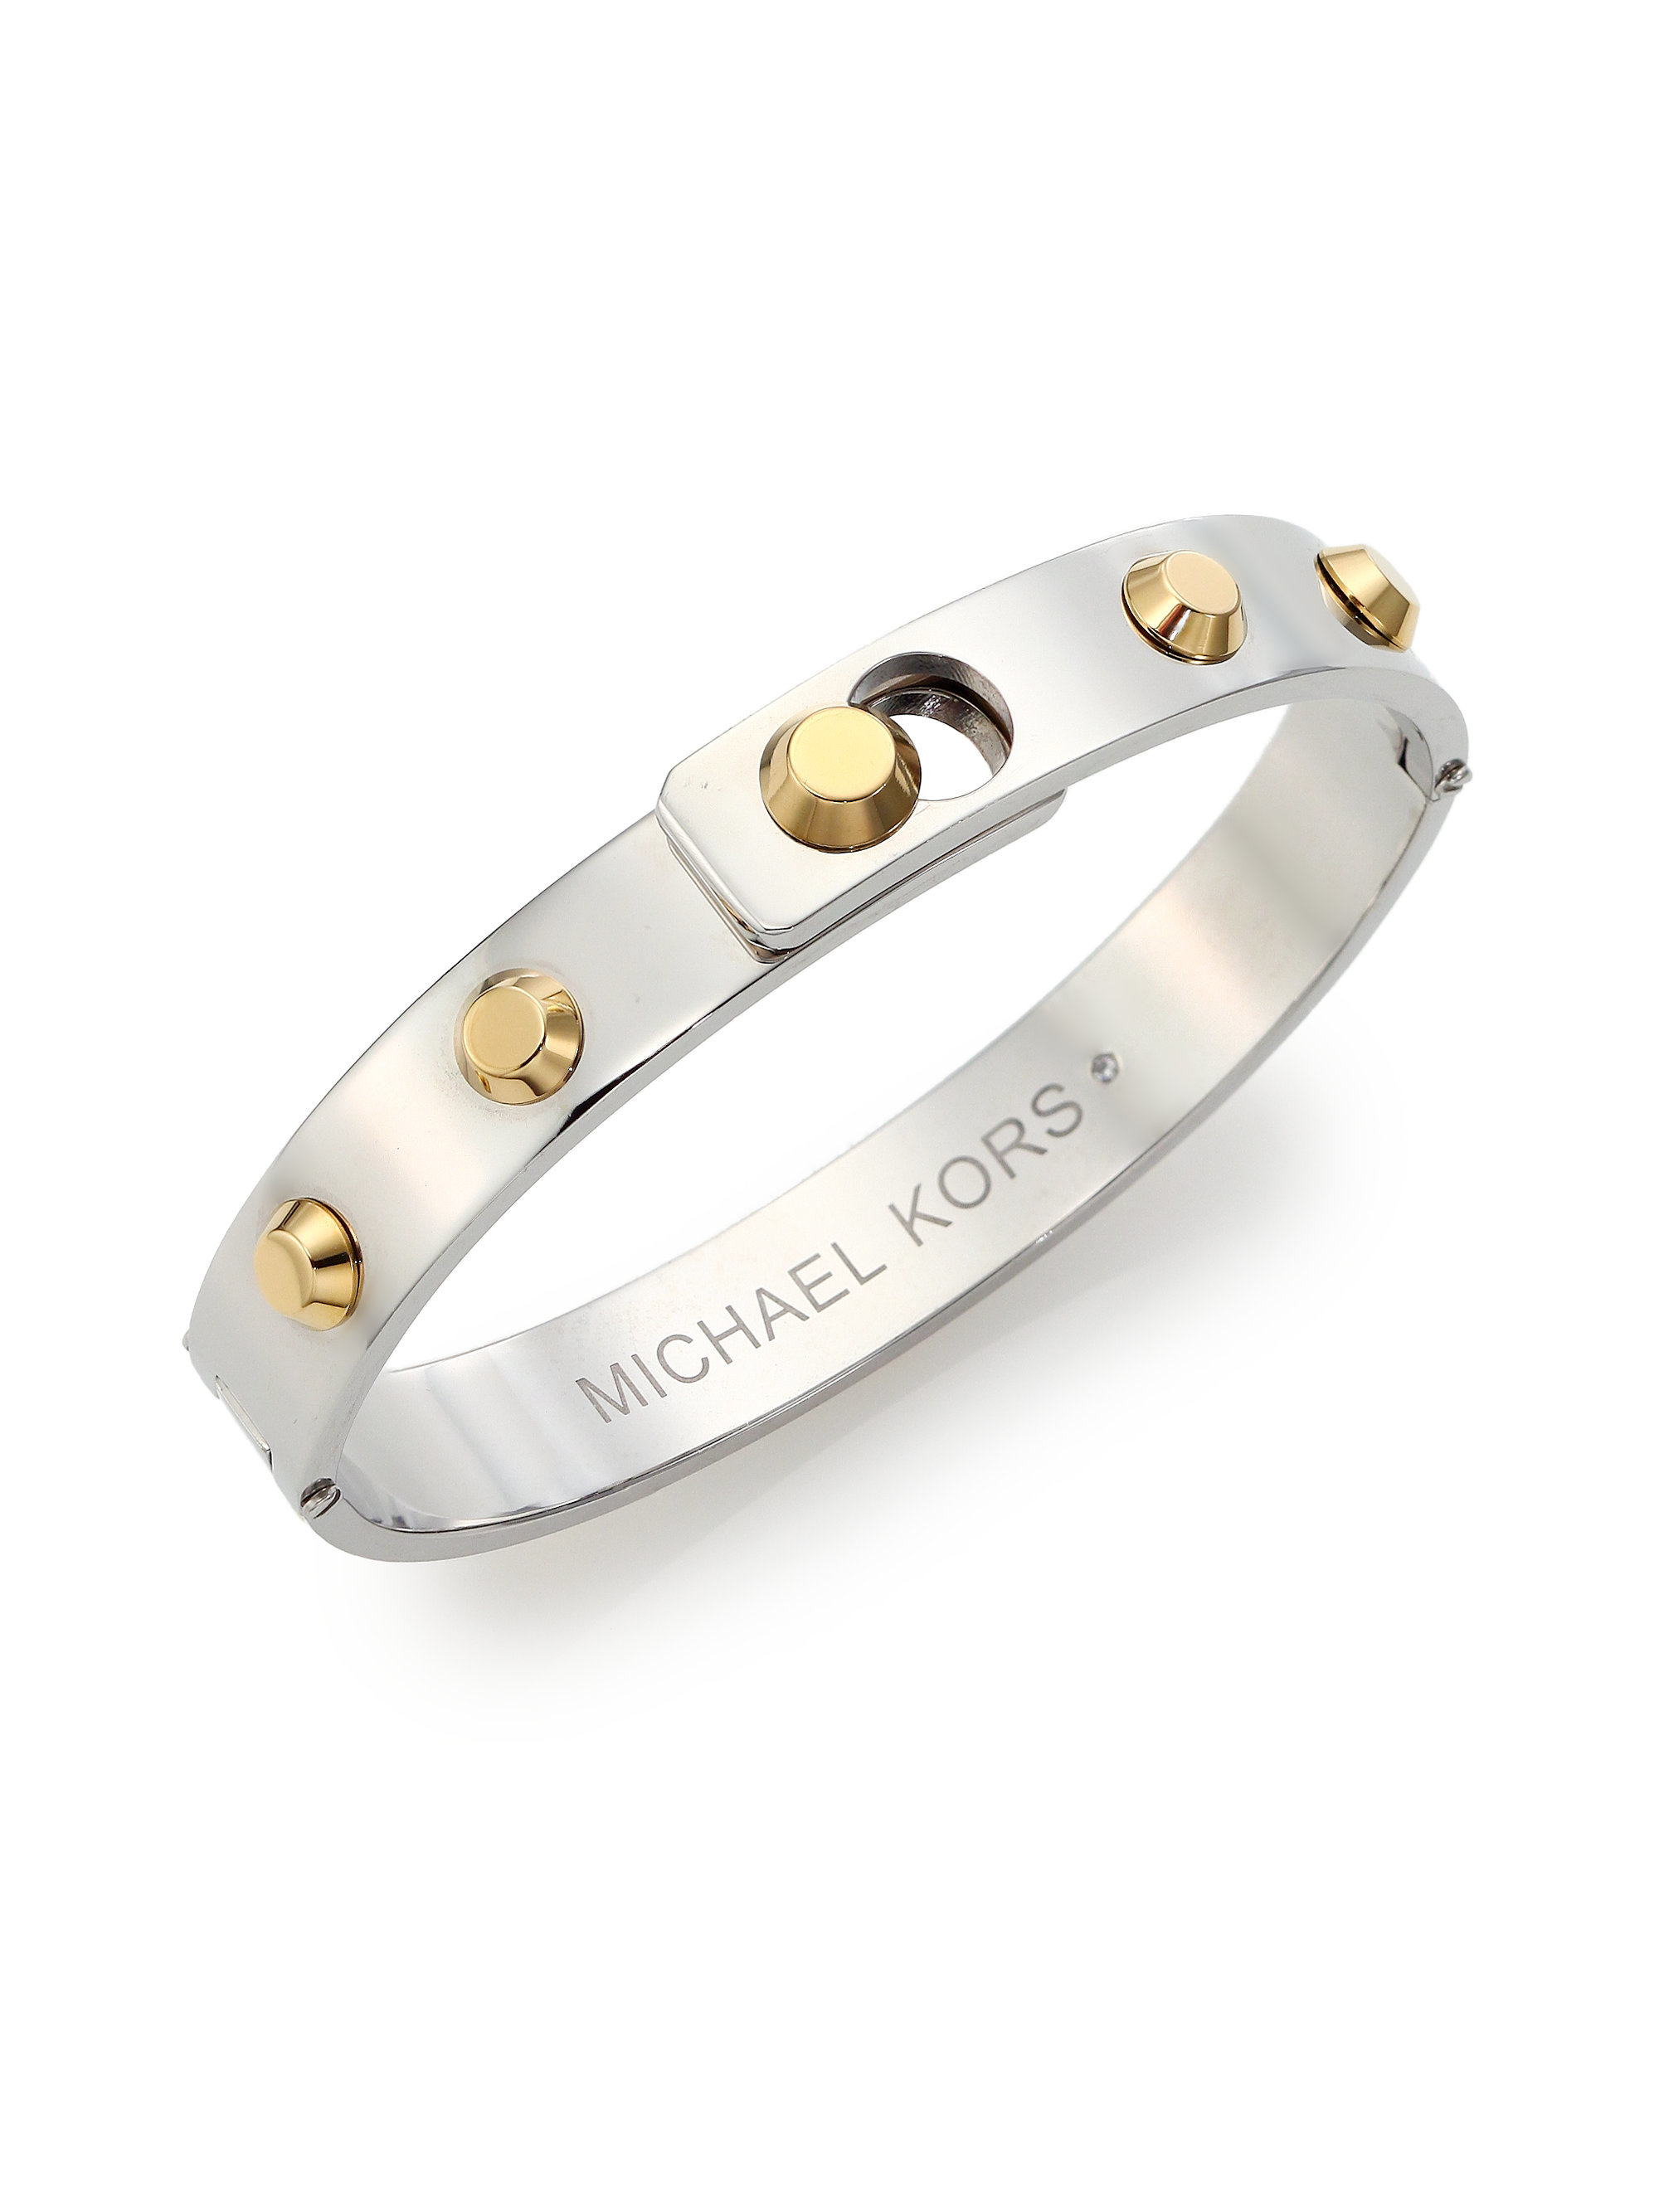 Michael Kors Cityscape Astor Studded Bangle Bracelet/Two-Tone in Metallic |  Lyst